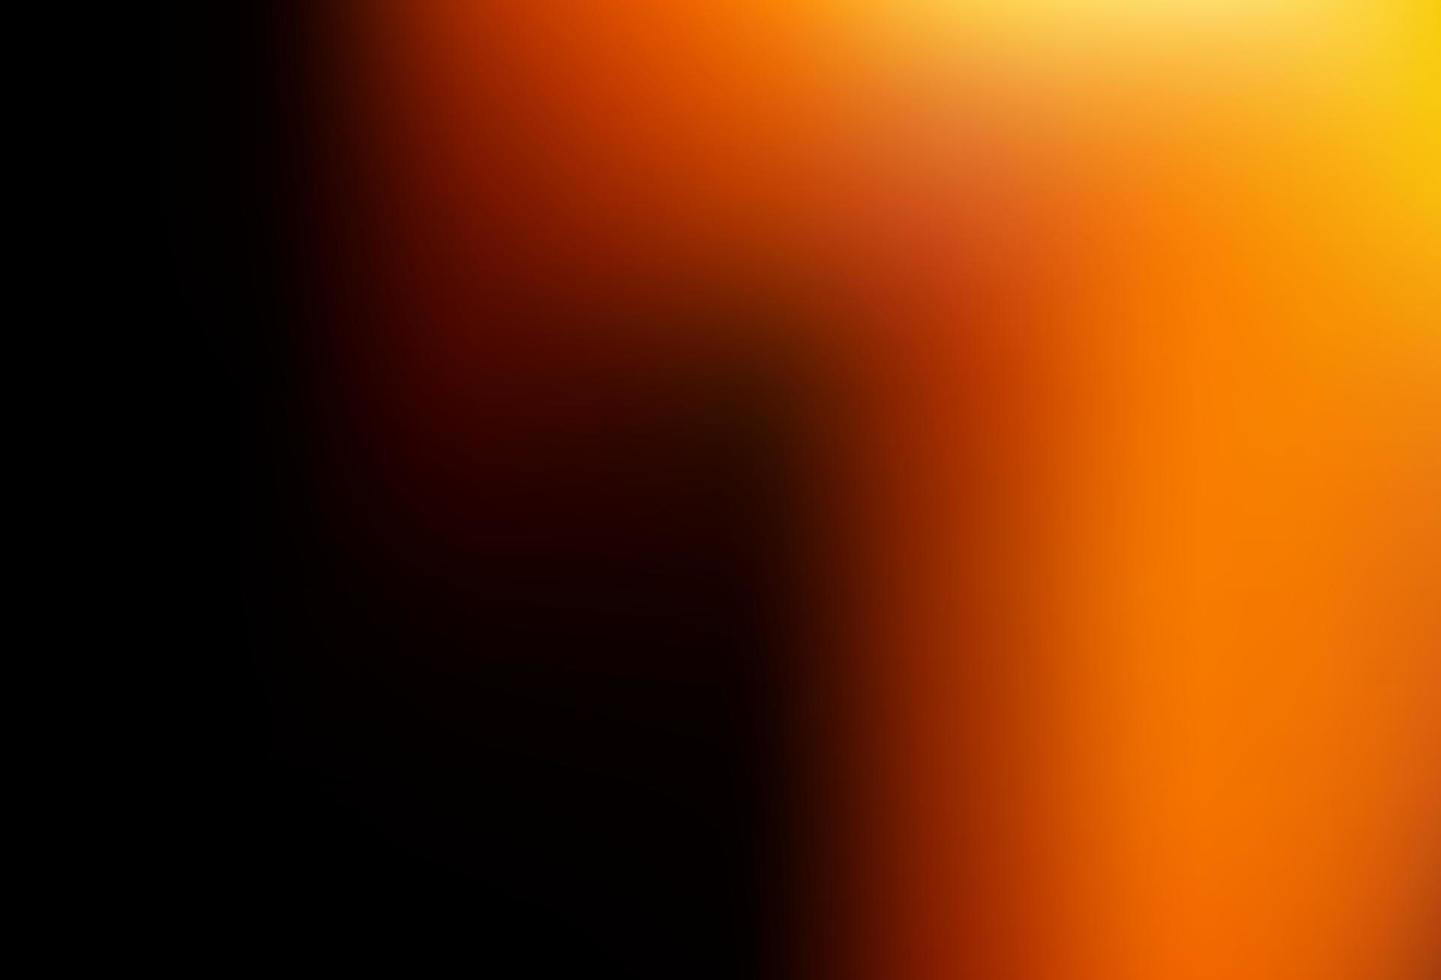 Dark Orange vector blurred bright pattern.